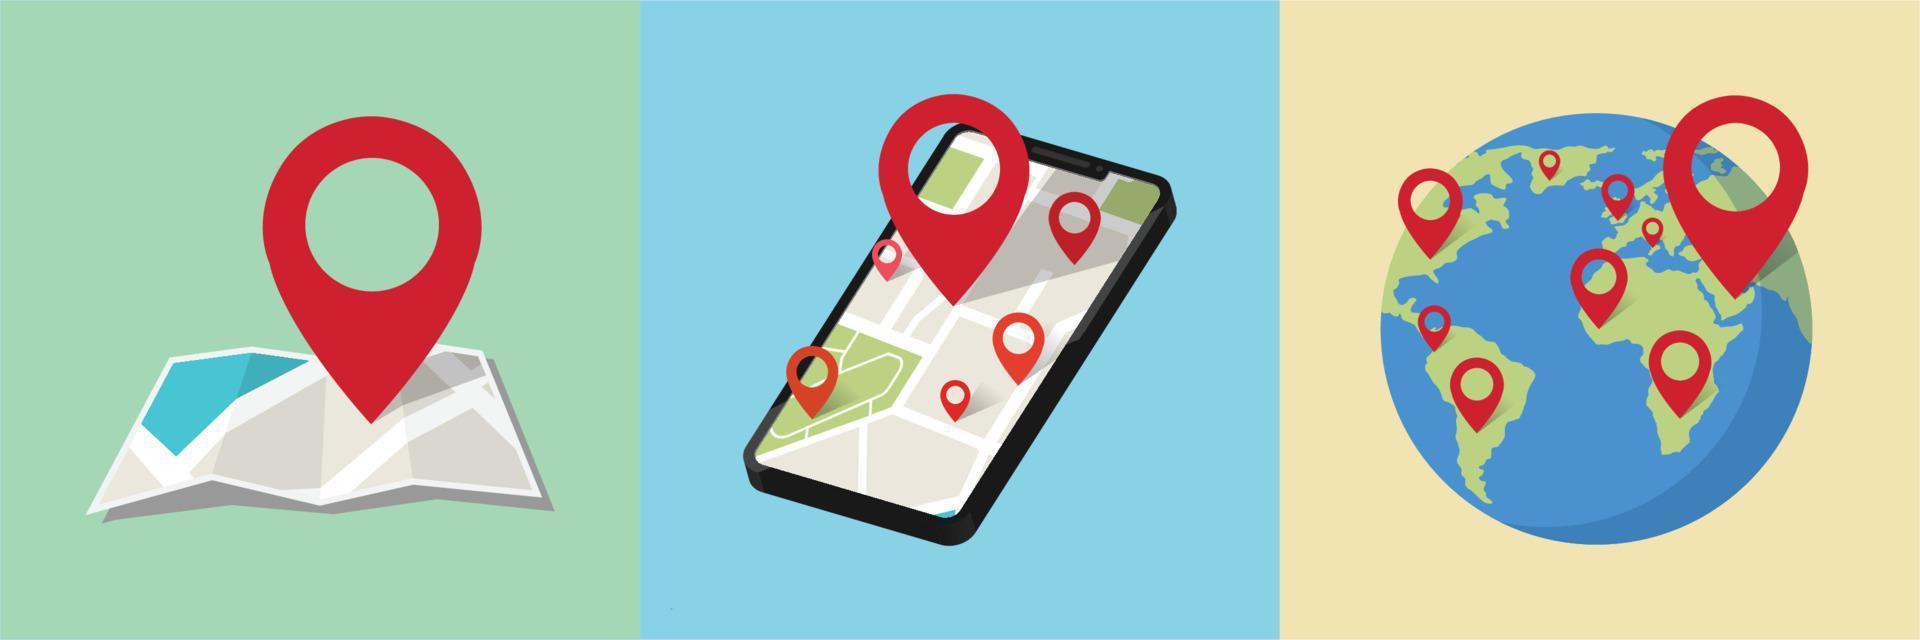 smartphone mobile GPS navigazione vettore illustrazione isolato carta geografica icona con perno GPS vettore piatto e Posizione marcatore pointer posto nel isometrico disegno, concetto di strada viaggio direzione posizione simbolo